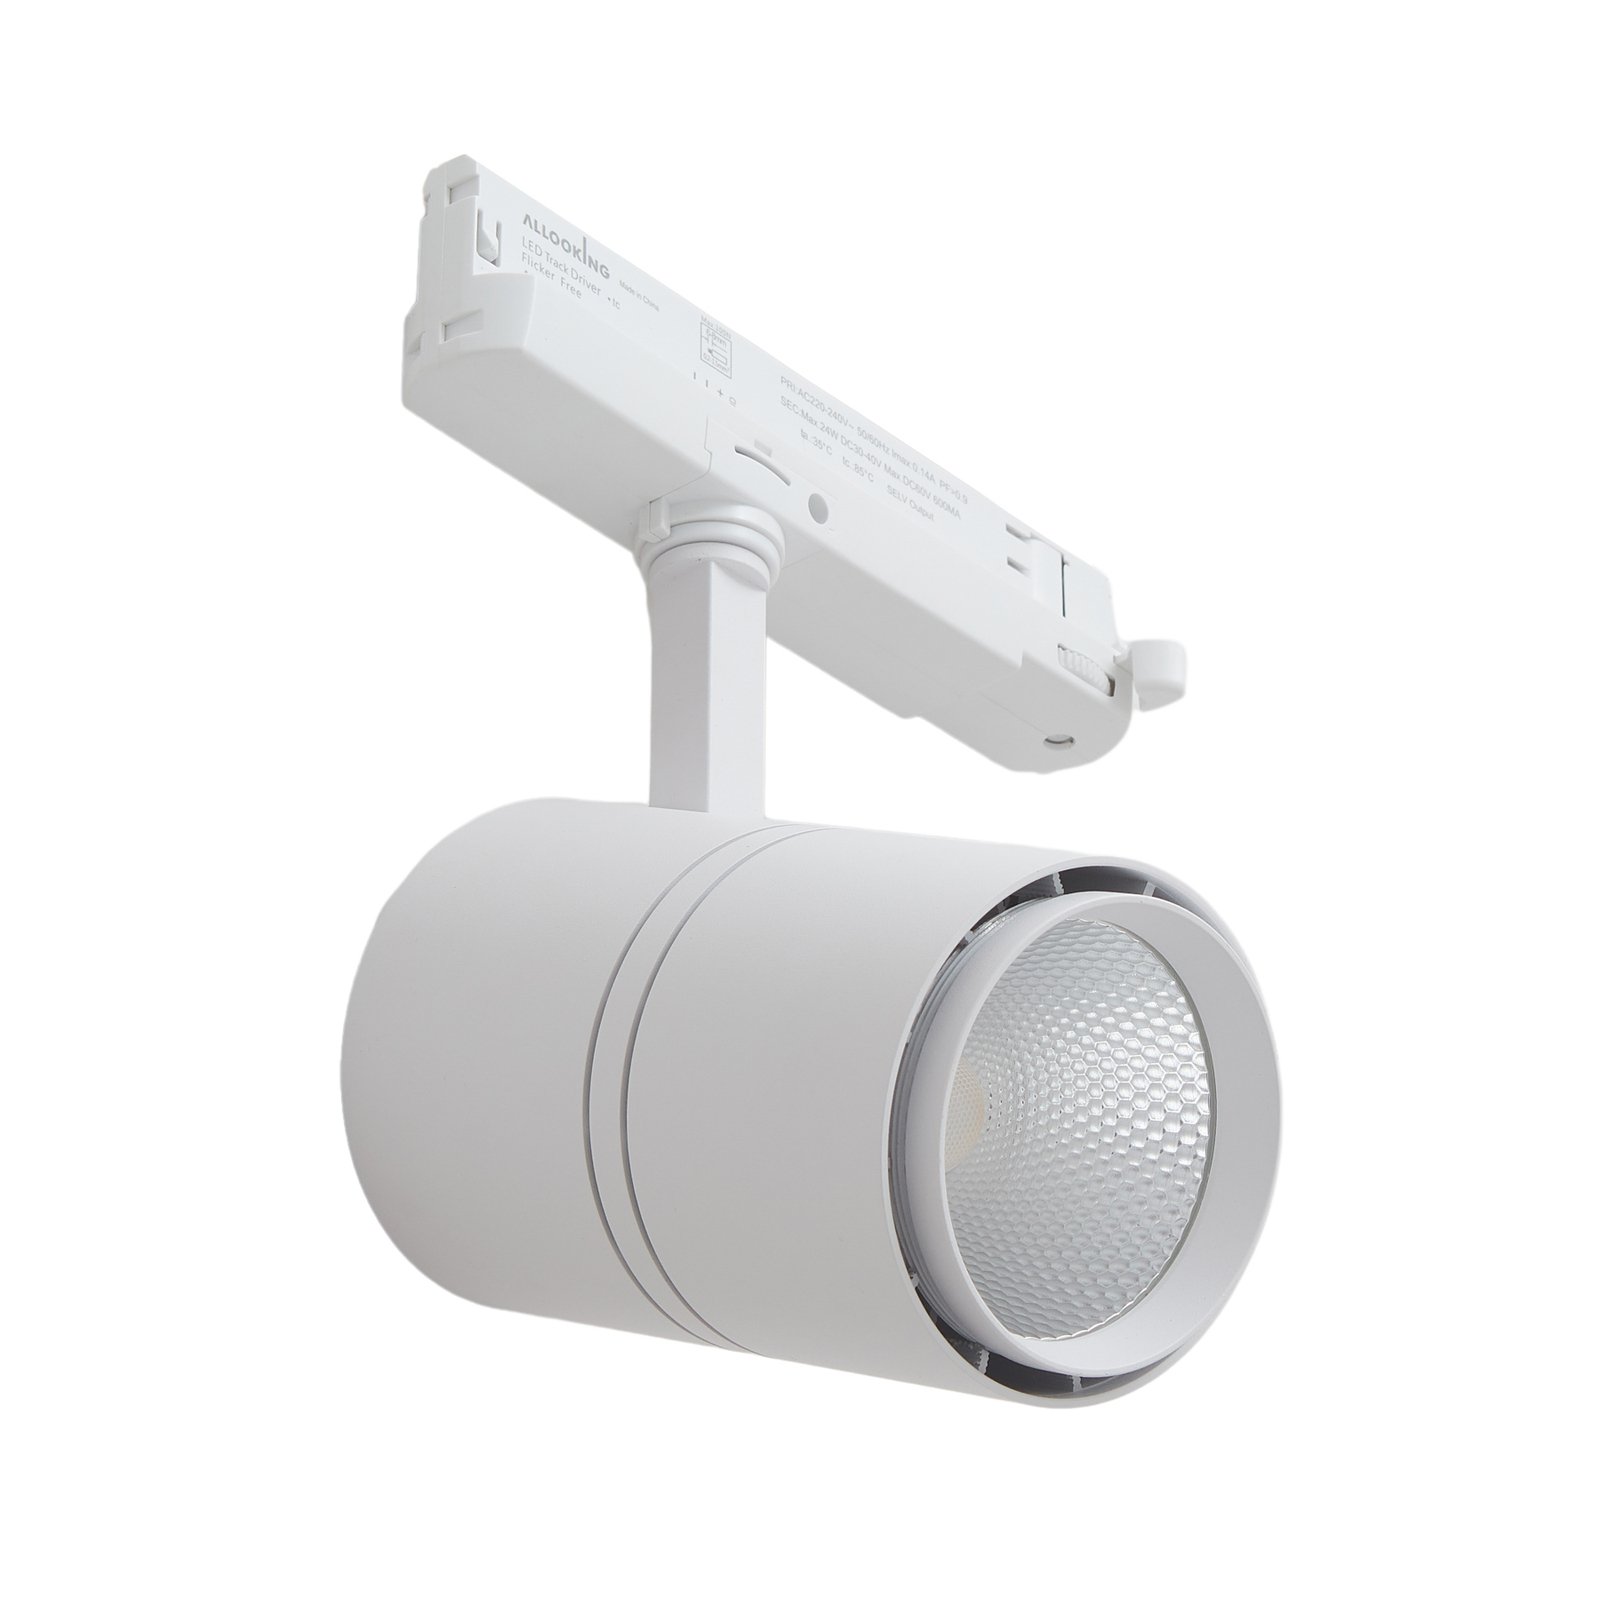 Arcchio LED reflektor Marny, bílý, 3fázový, stmívatelný